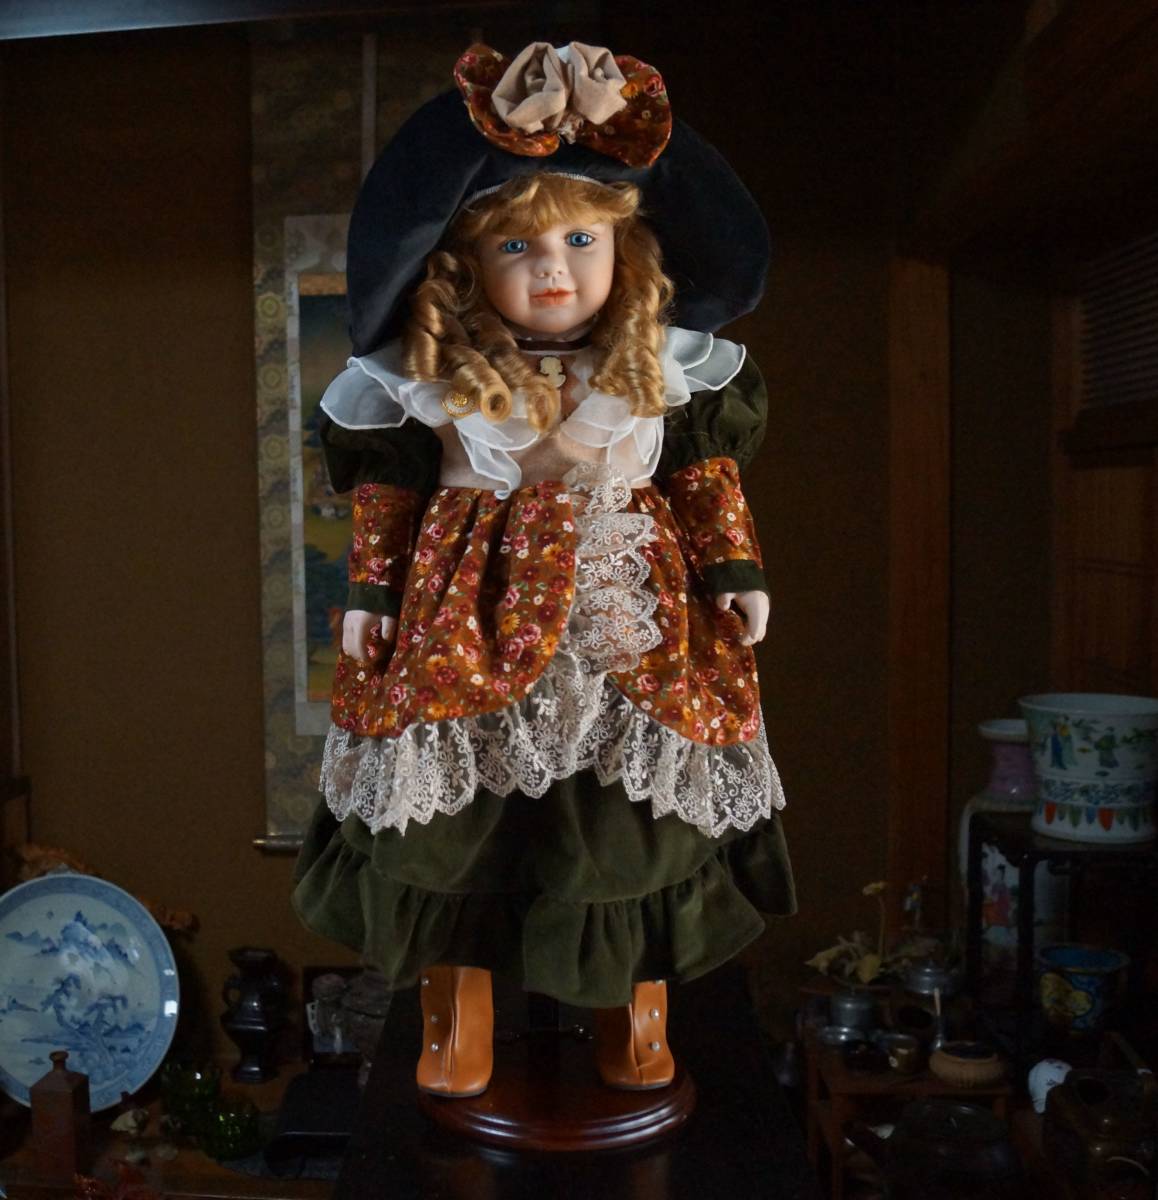 【閑】イギリス限定ビスクドール 可愛らしい女の子手造り磁器人形 グラスブルーアイ by J.C.leonherdt サイン付き 置台付 4D1019